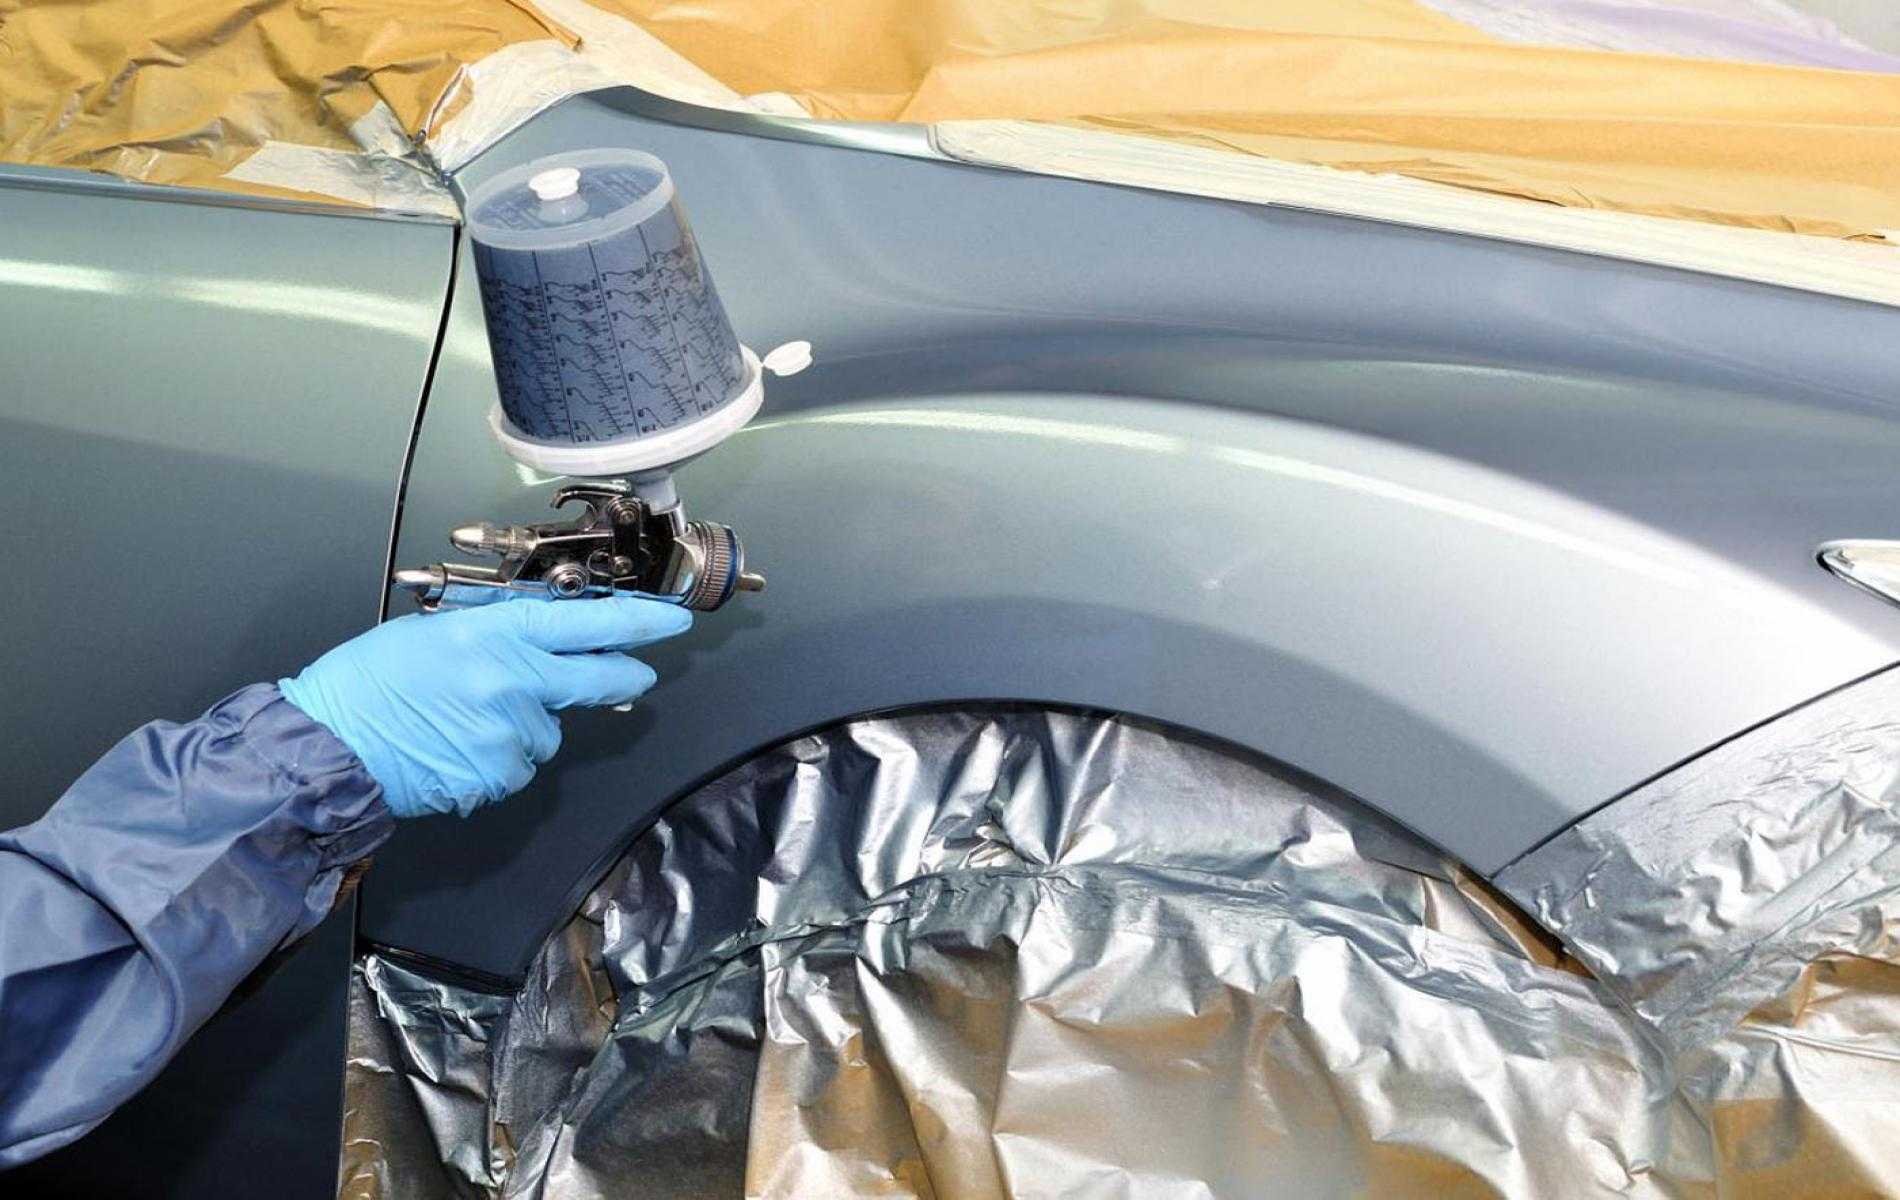 Обезжиривание поверхности автомобиля перед покраской: как это правильно сделать